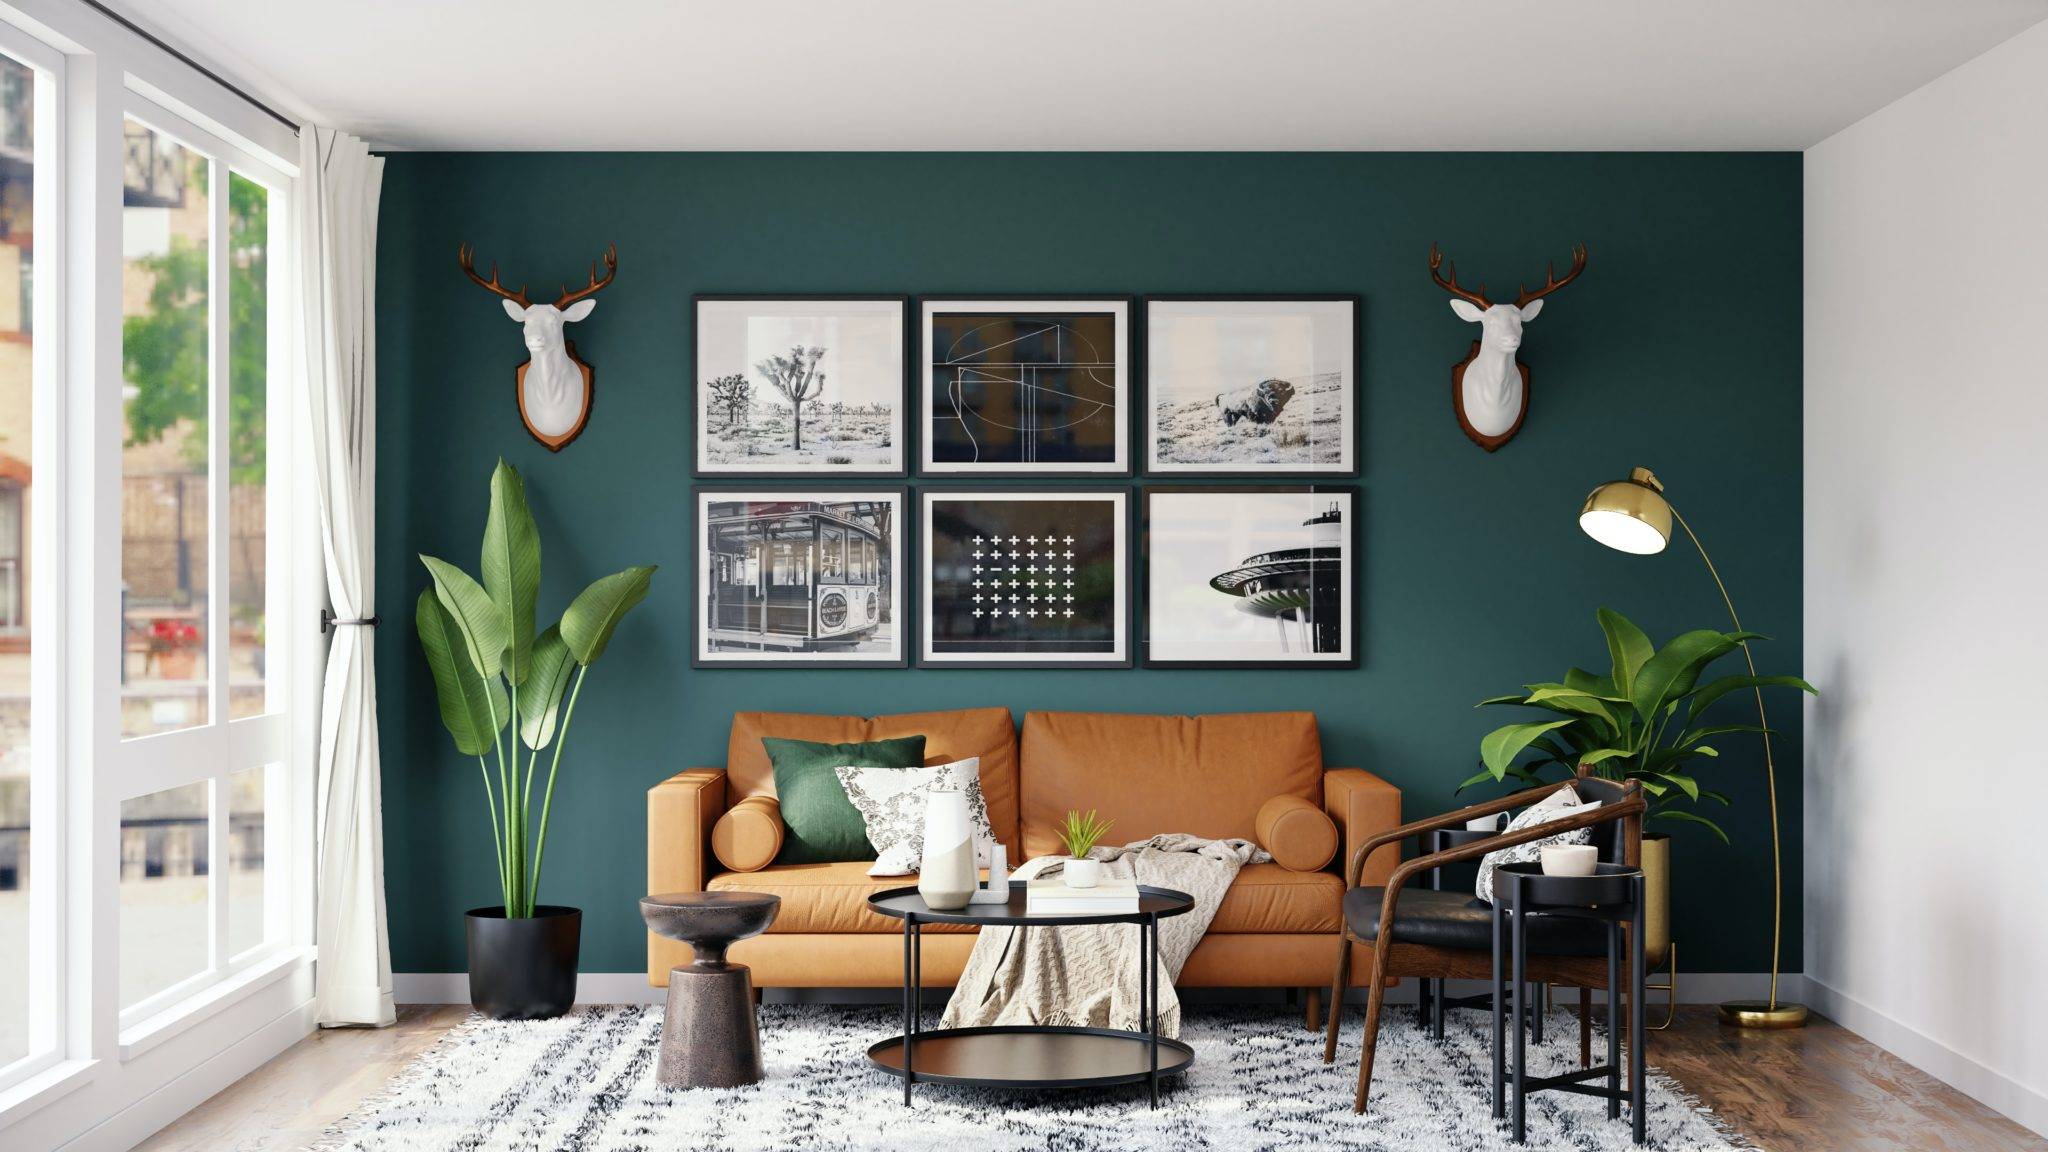 綠色設計;橄欖綠;壁紙;室內芬多精;室內植物;衛浴設計